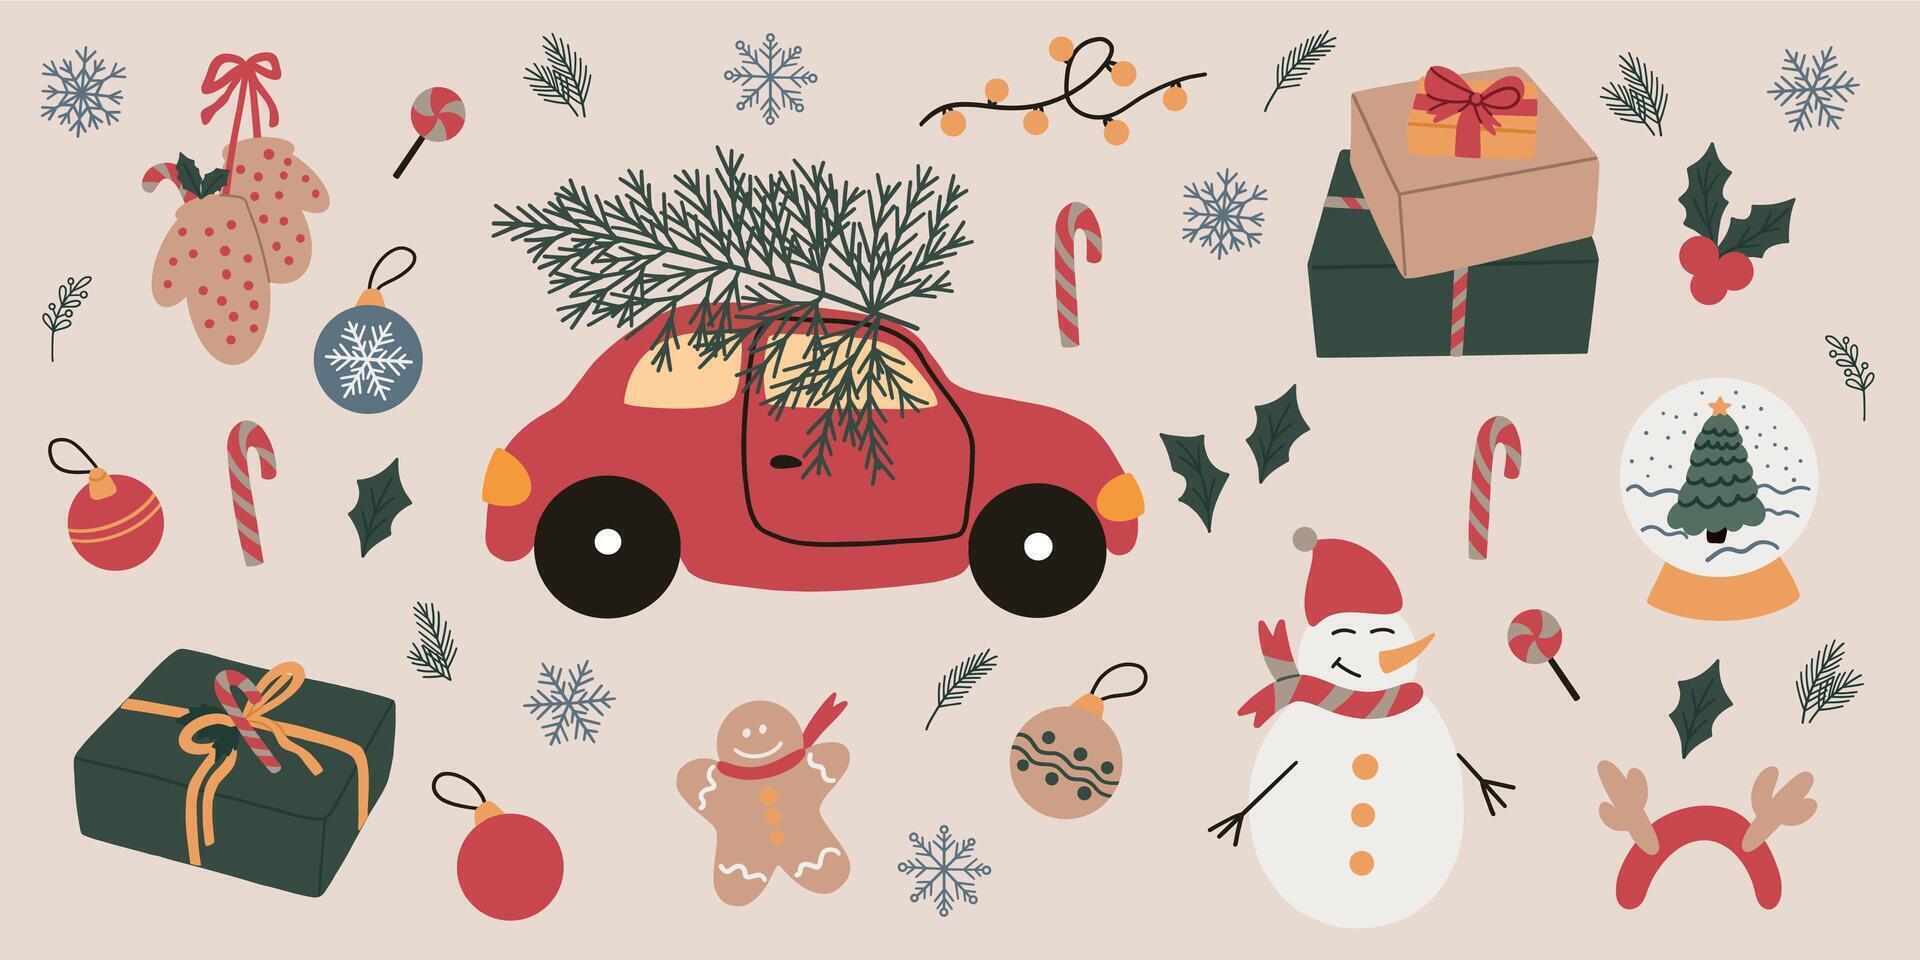 alegre Navidad y contento nuevo año elementos. acogedor recopilación. conjunto de tradicional invierno simbolos muñeco de nieve, auto, regalos, copo de nieve, pan de jengibre hombre y otro. contento dia festivo. mano dibujado vector diseño